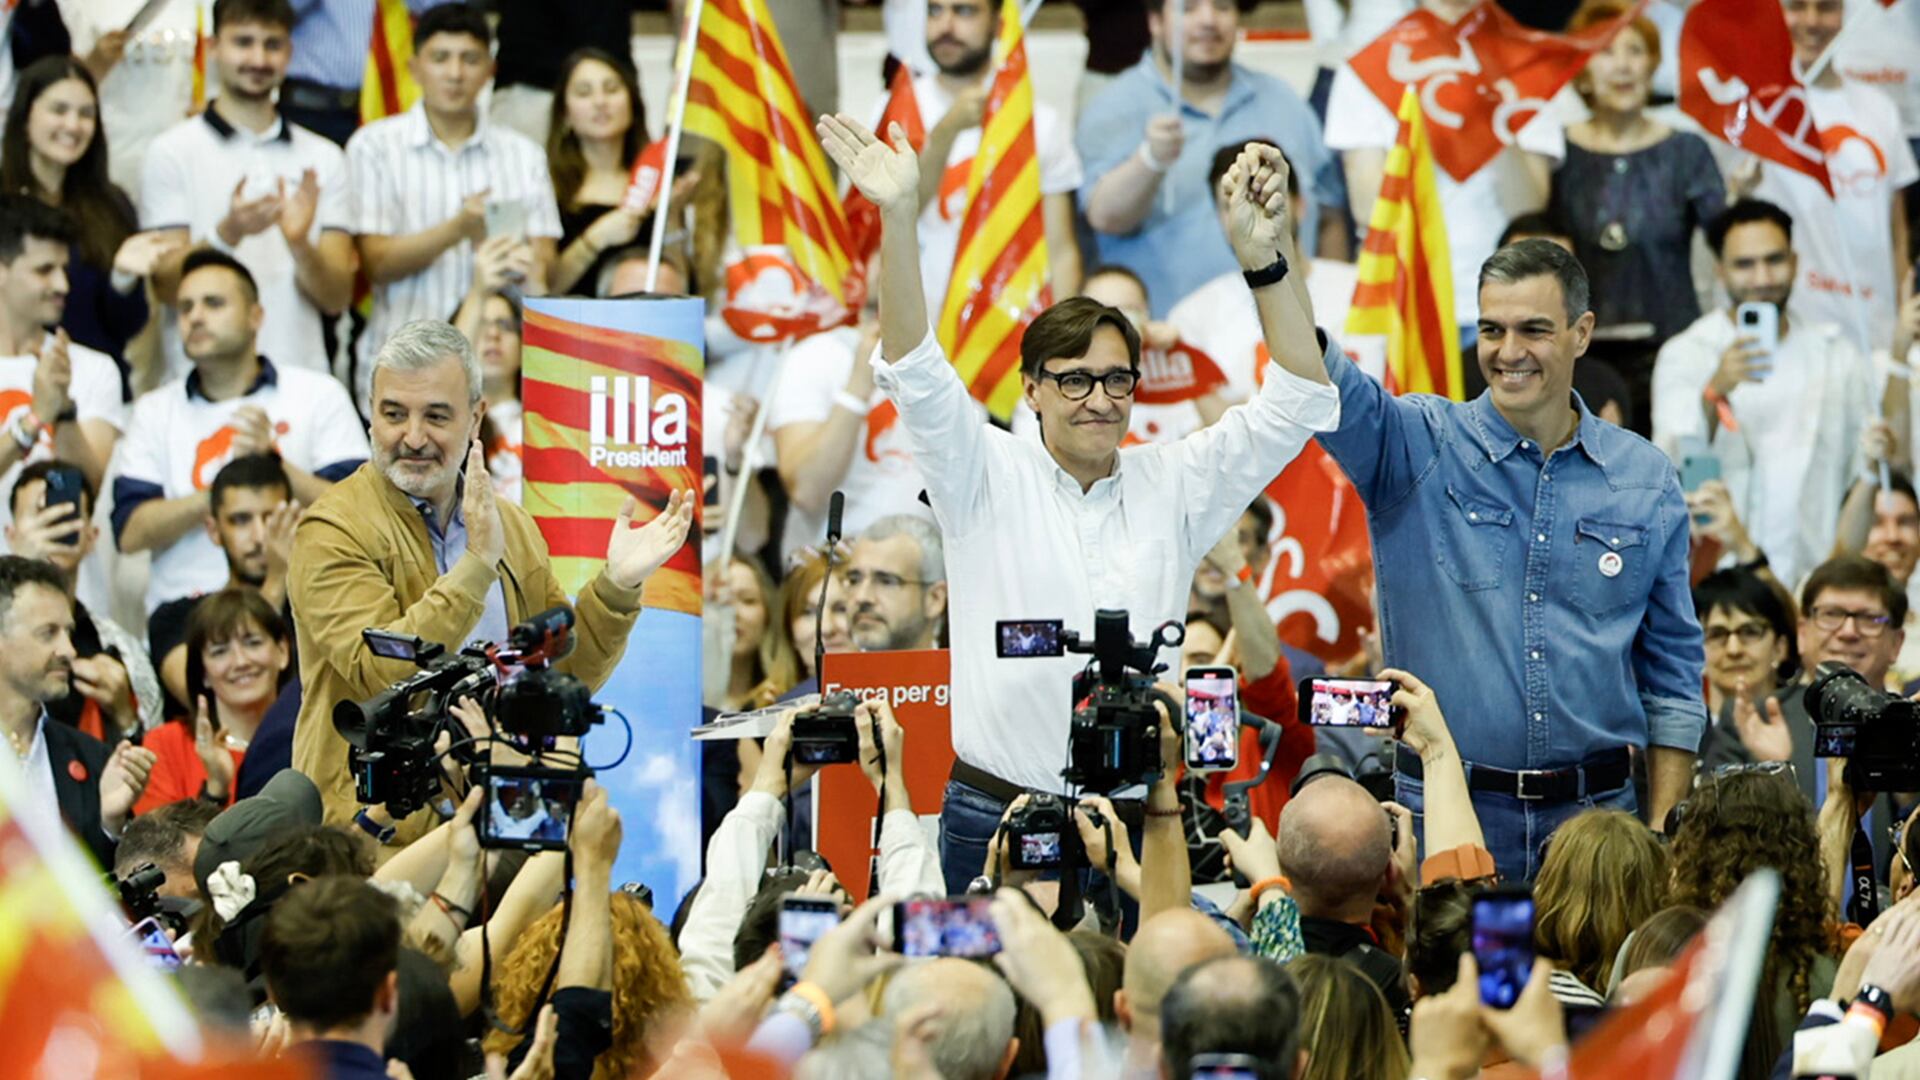 Desde la izquierda, Jaume Collboni, alcalde de Barcelona; Salvador Illa, candidato del PSC a la presidencia de la Generalitat, y Pedro Sánchez, secretario general del PSOE, en el mitin de final de campaña en el Pavelló Vall d’Hebron (Barcelona).